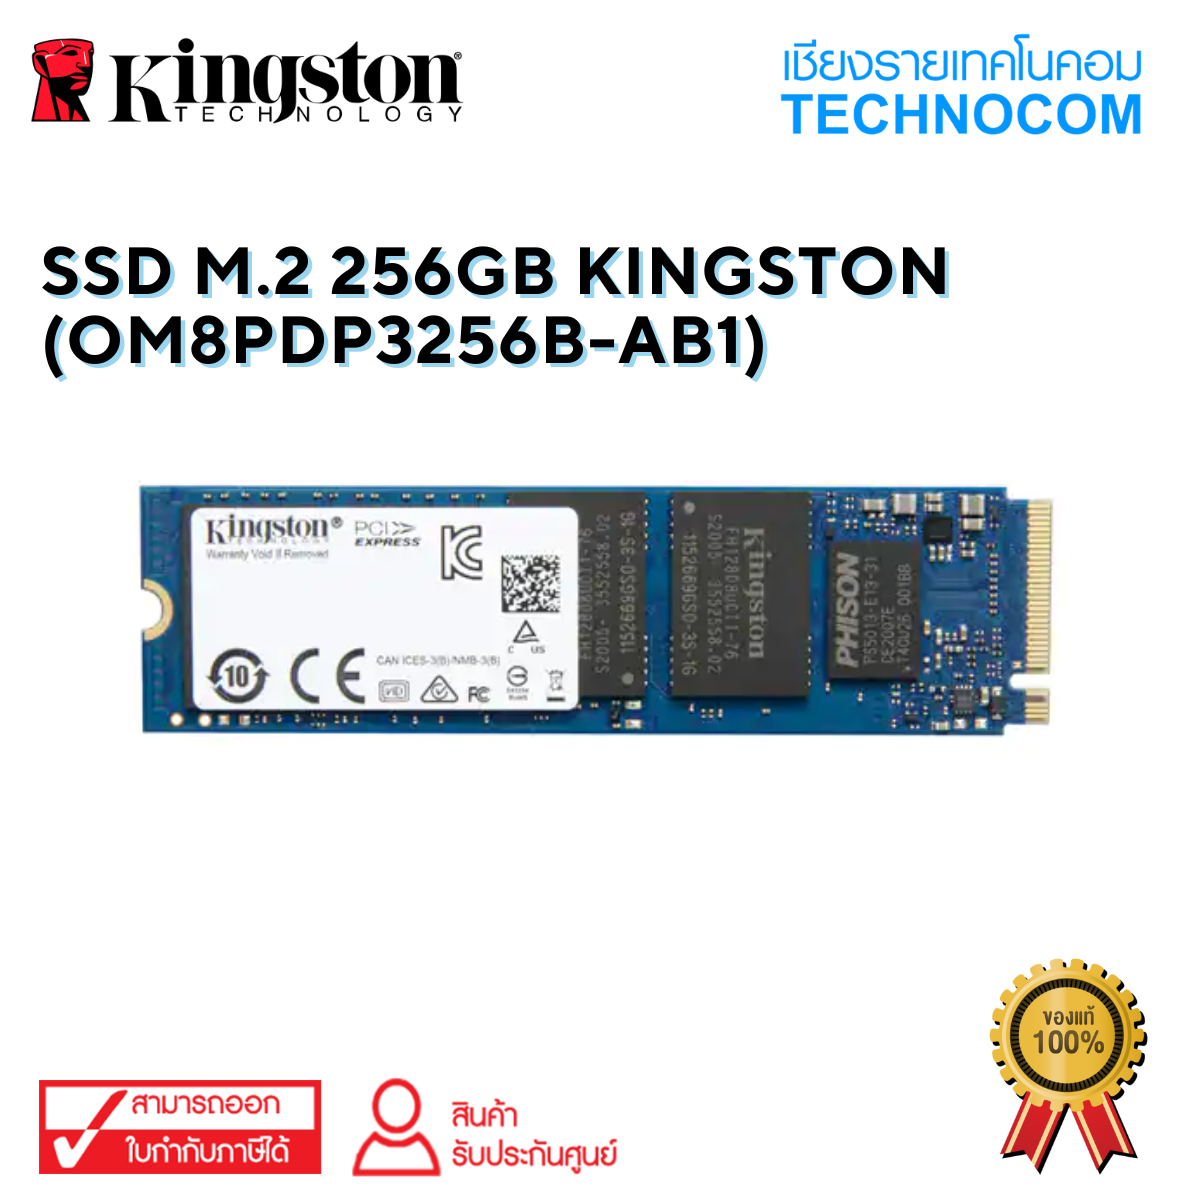 SSD M.2 256GB KINGSTON (OM8PDP3256B-AB1)